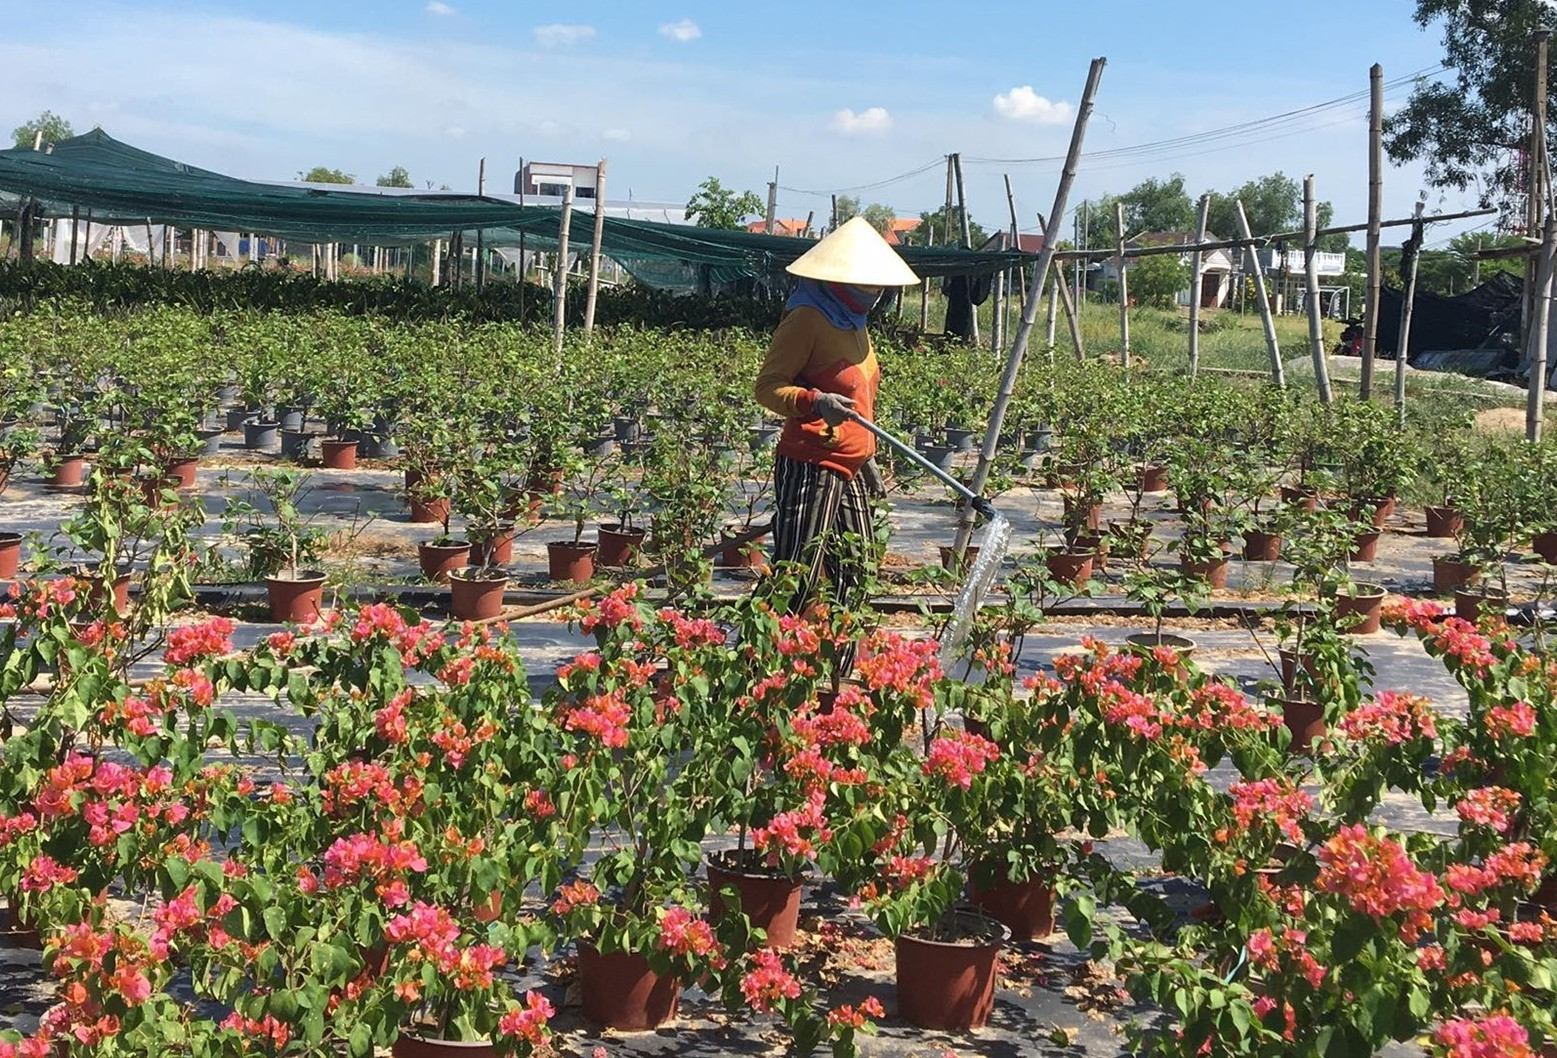 Vườn hoa kiểng Na Sơn vẫn duy trì tưới nước, bón phân cho hoa giấy đã quá ngày xuất bán. Ảnh: Ly Trang